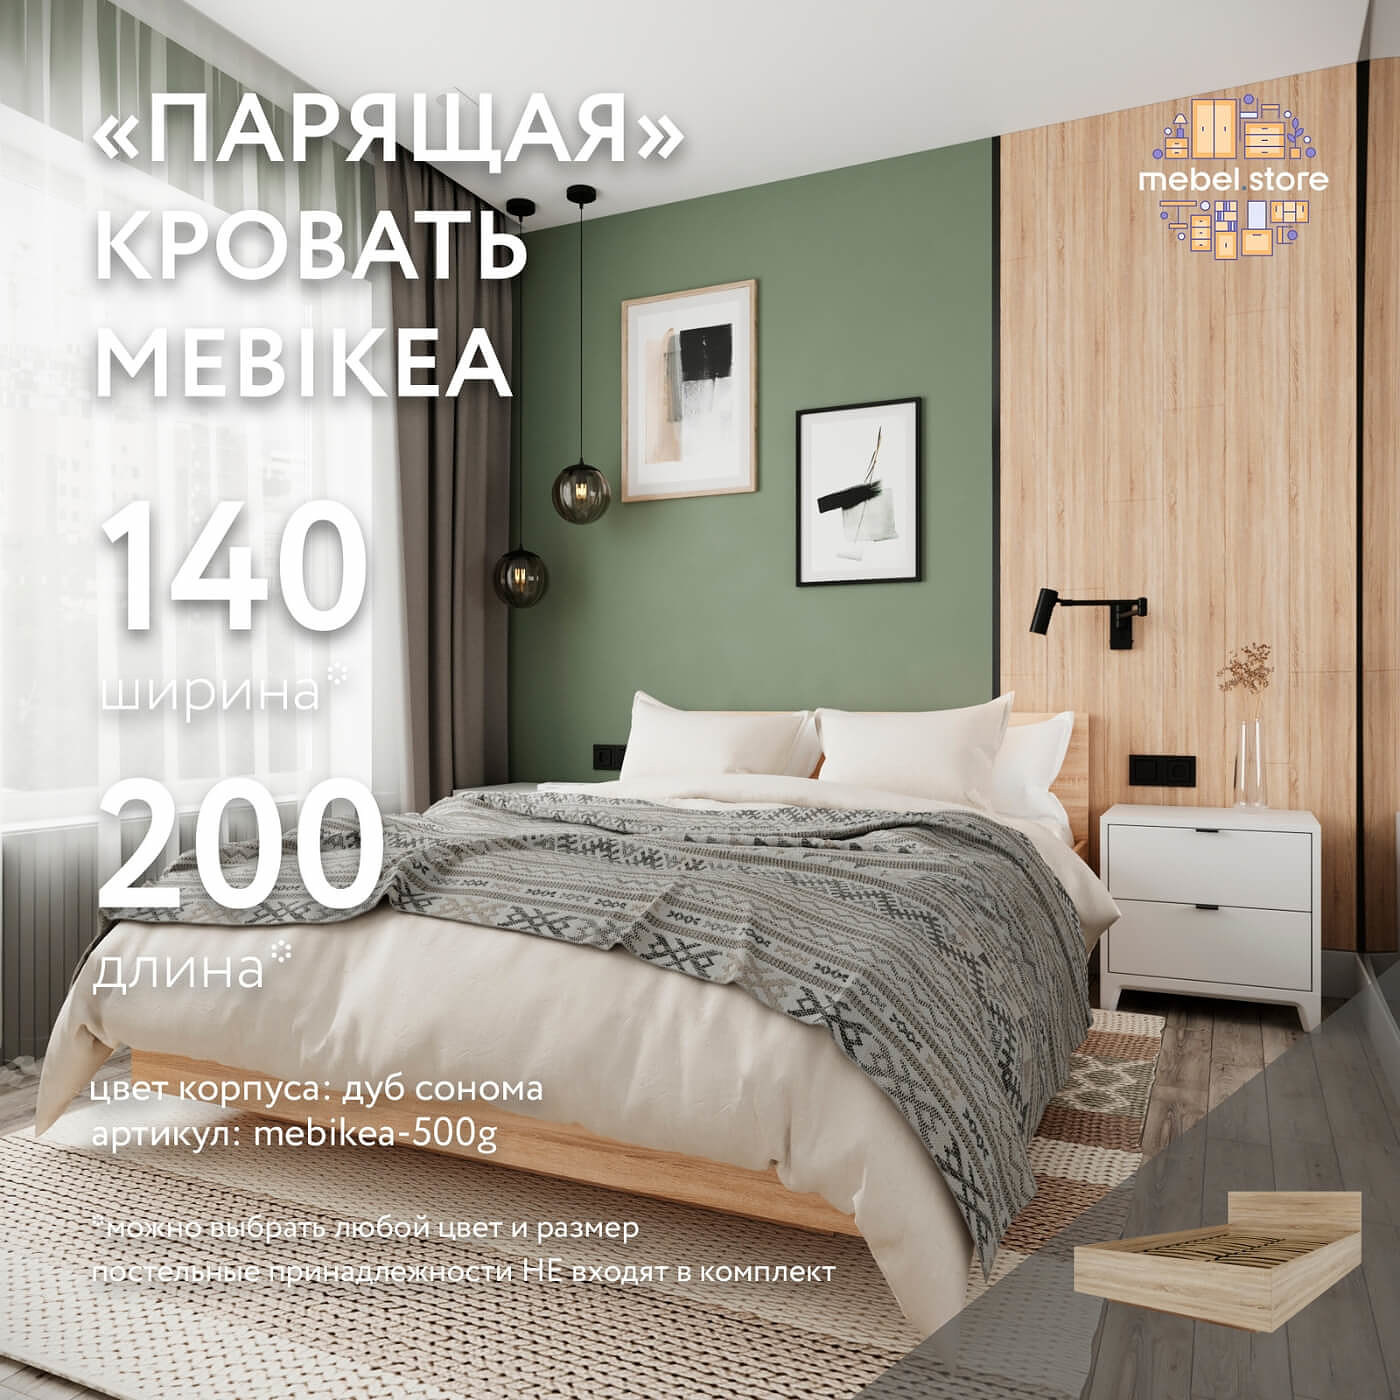 Кровать Mebikea-500g двуспальная минимализм - фото 1 large